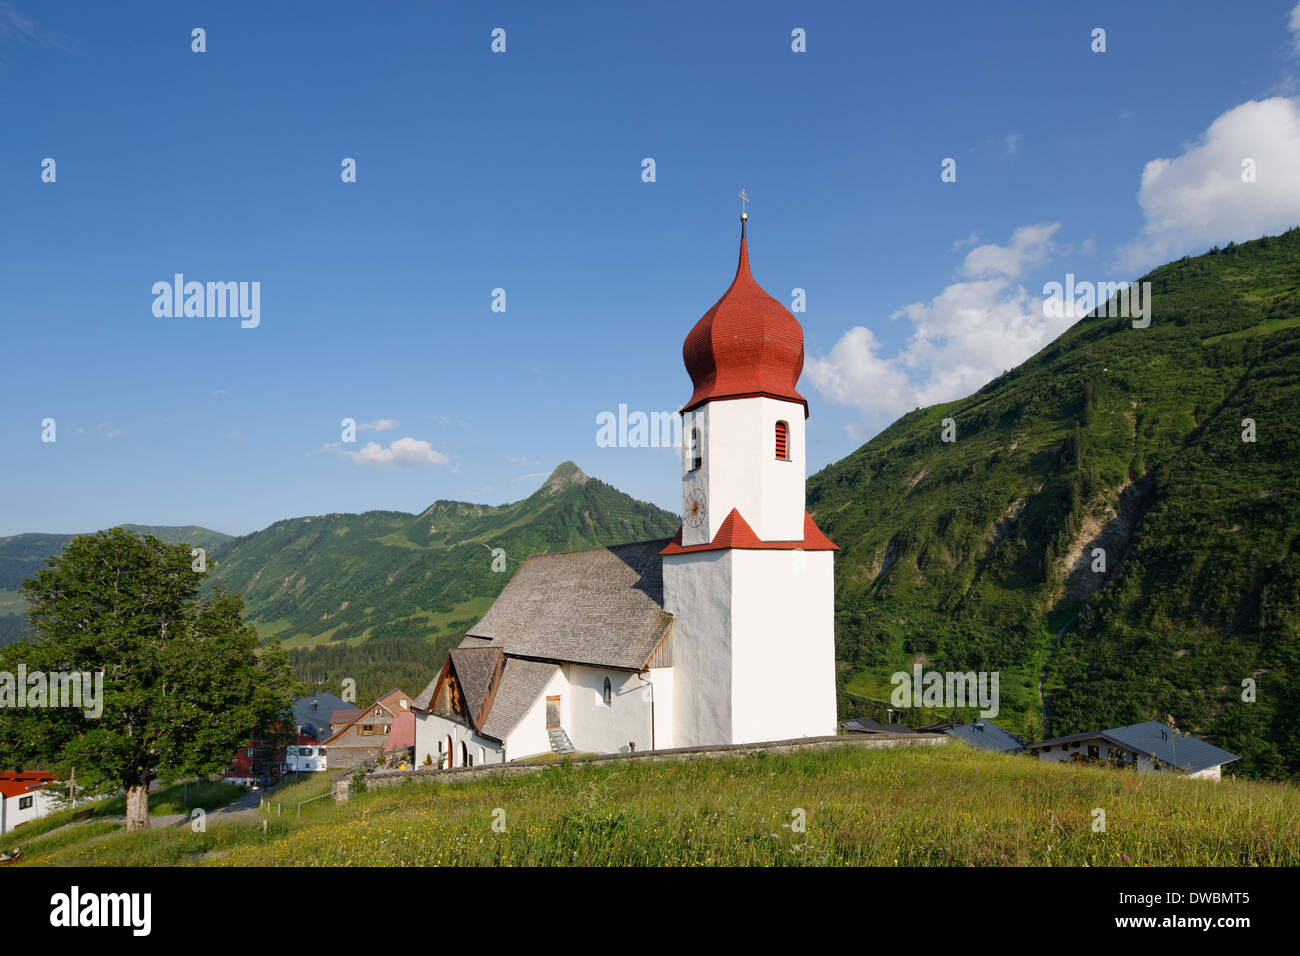 Austria, Vorarlberg, Bregenz Forest, St. Nicholas Church Stock Photo